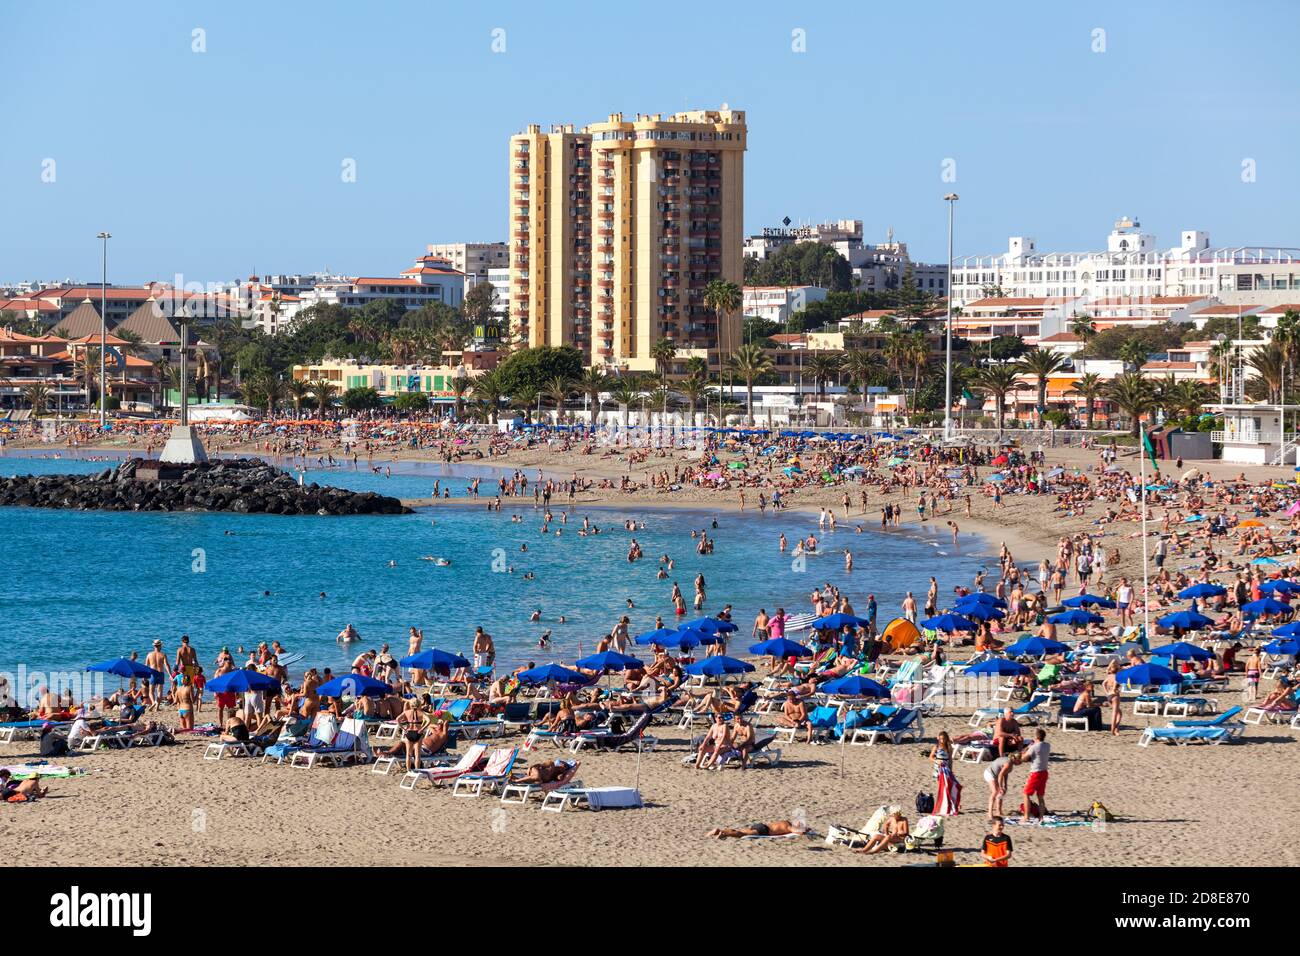 LOS CRISTIANOS, TENERIFE, CANARIES, ESPAGNE - VERS JANVIER 2016: Beaucoup de gens sont sur la plage de sable de Las Vistas. Les plages sont sur l'océan Atlantique Banque D'Images